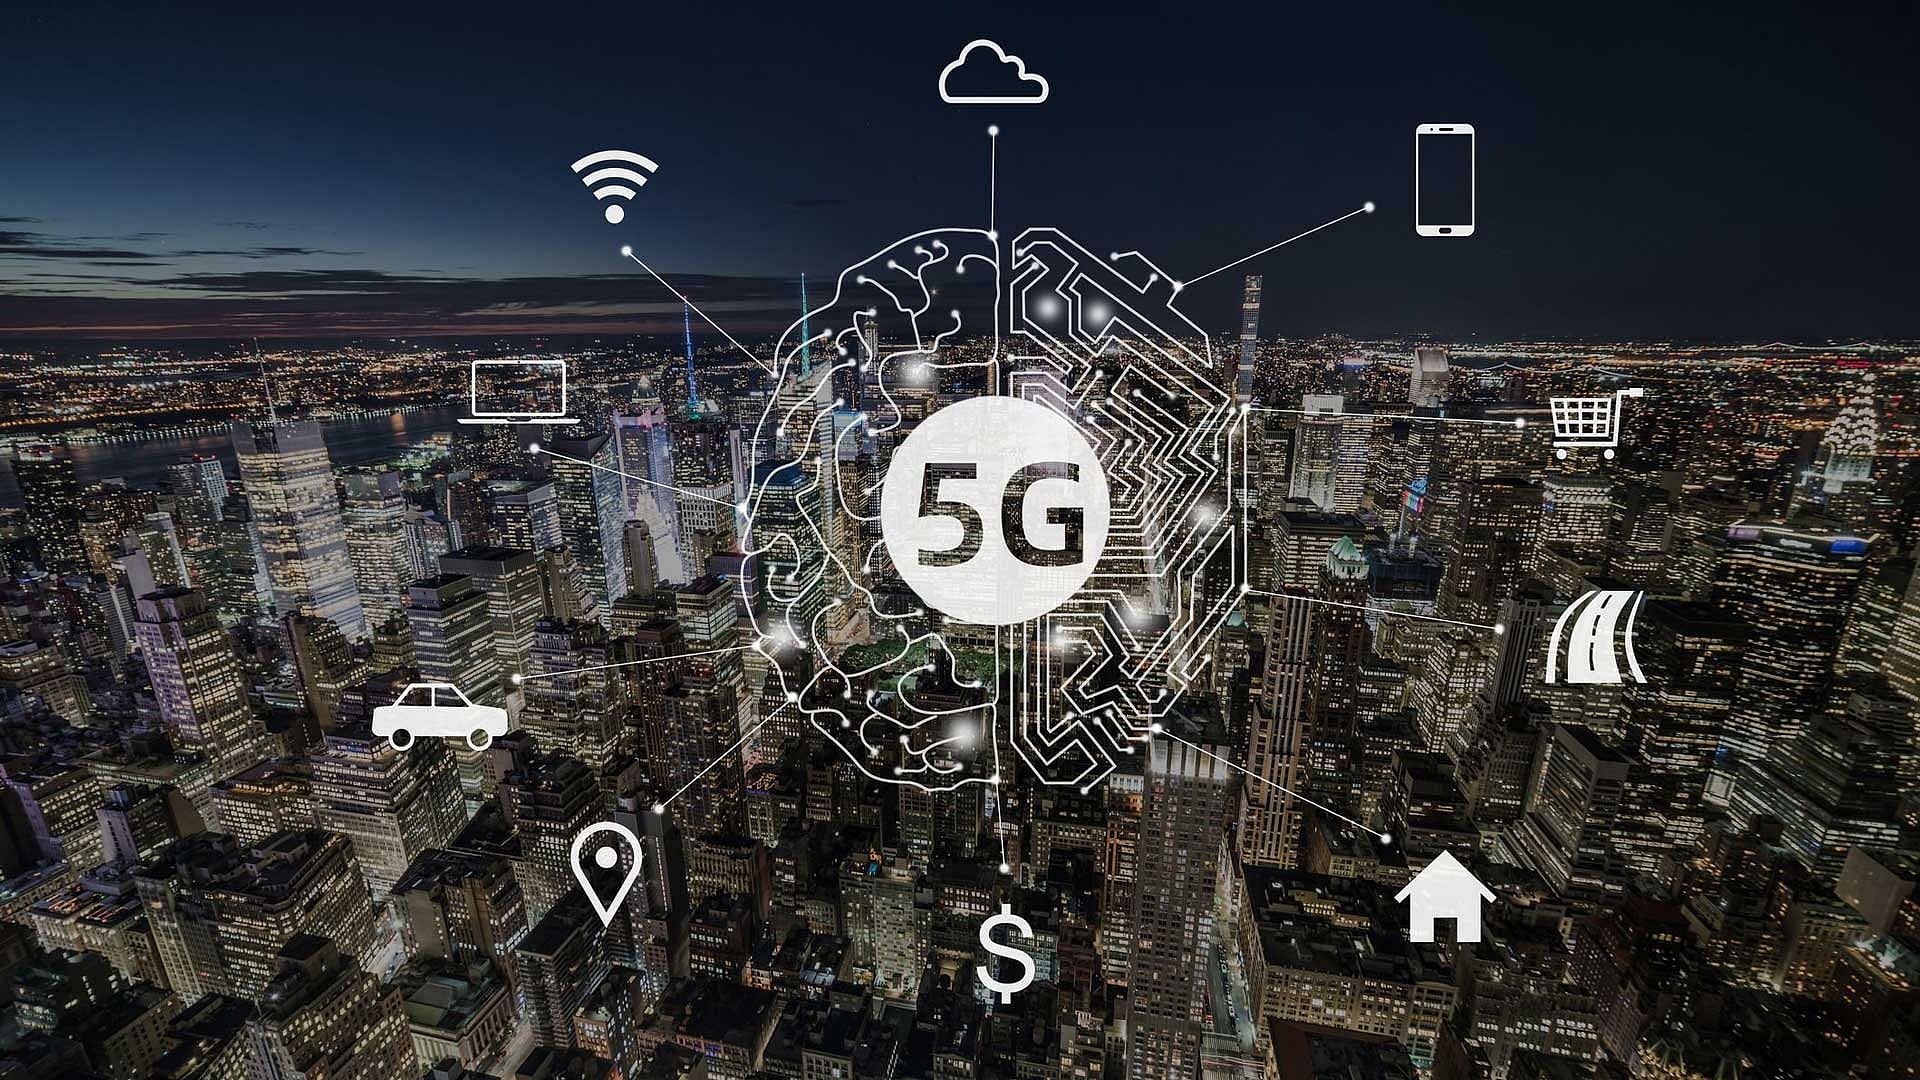 5G टेक्नोलॉजी आने से दुनिया काफी बदलने वाला है लेकिन इसकी अपनी चुनौतियां भी हैं